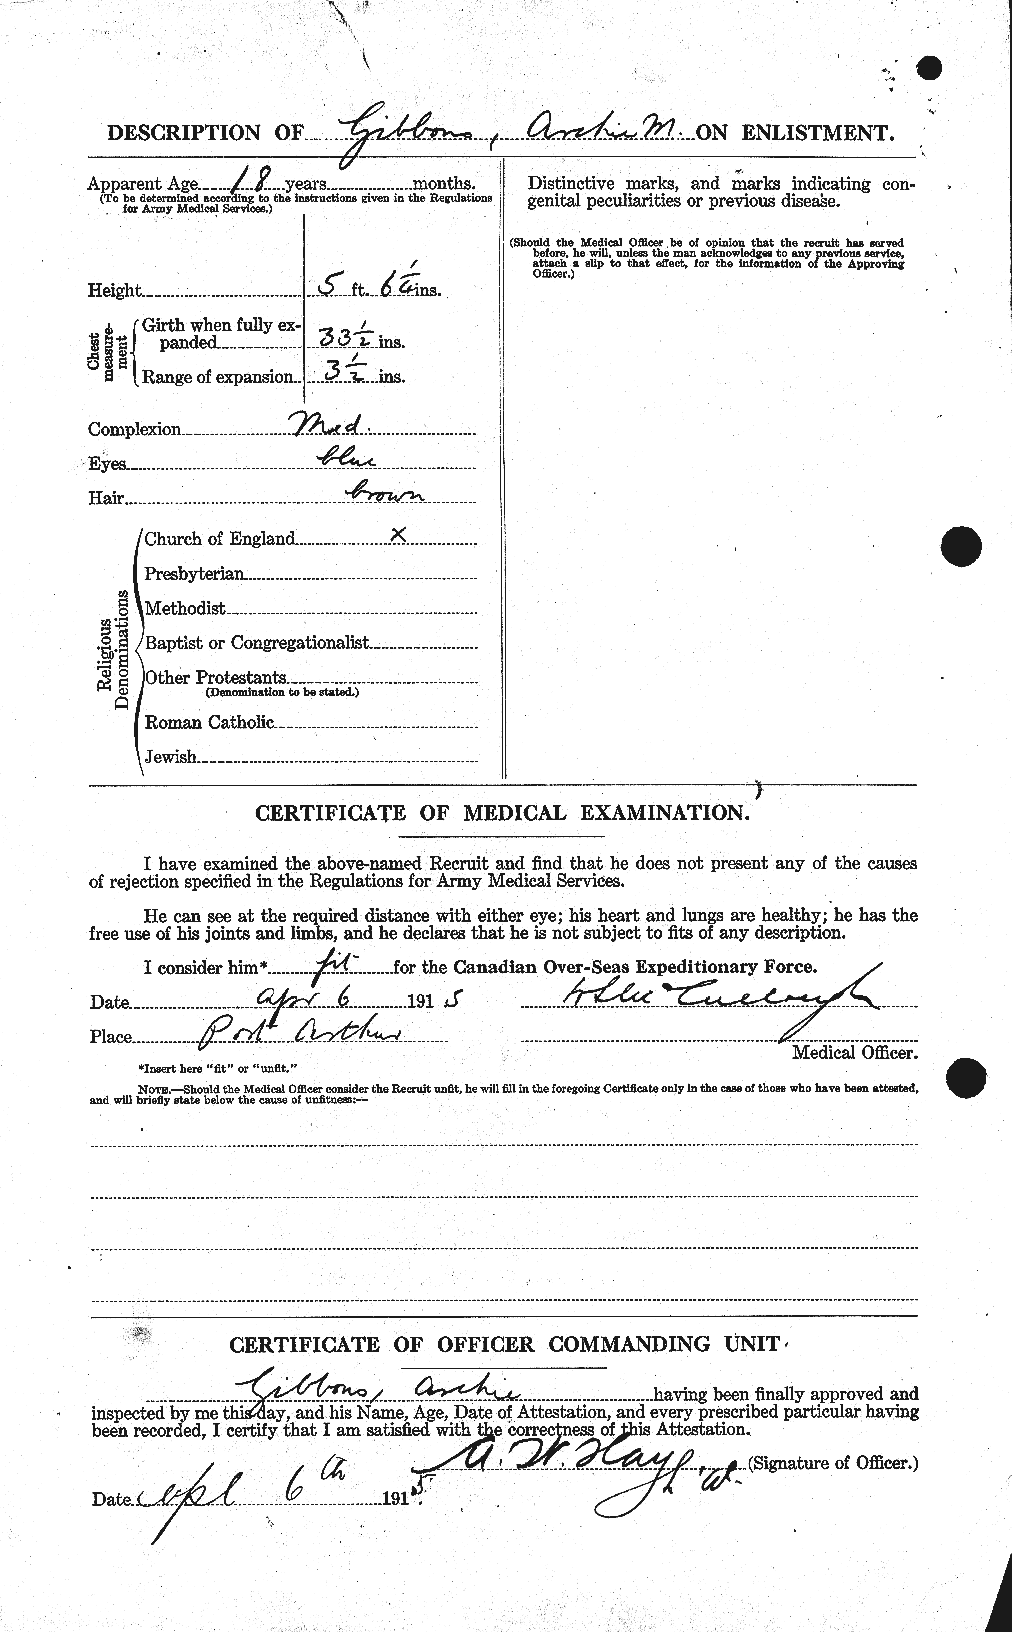 Dossiers du Personnel de la Première Guerre mondiale - CEC 347961b